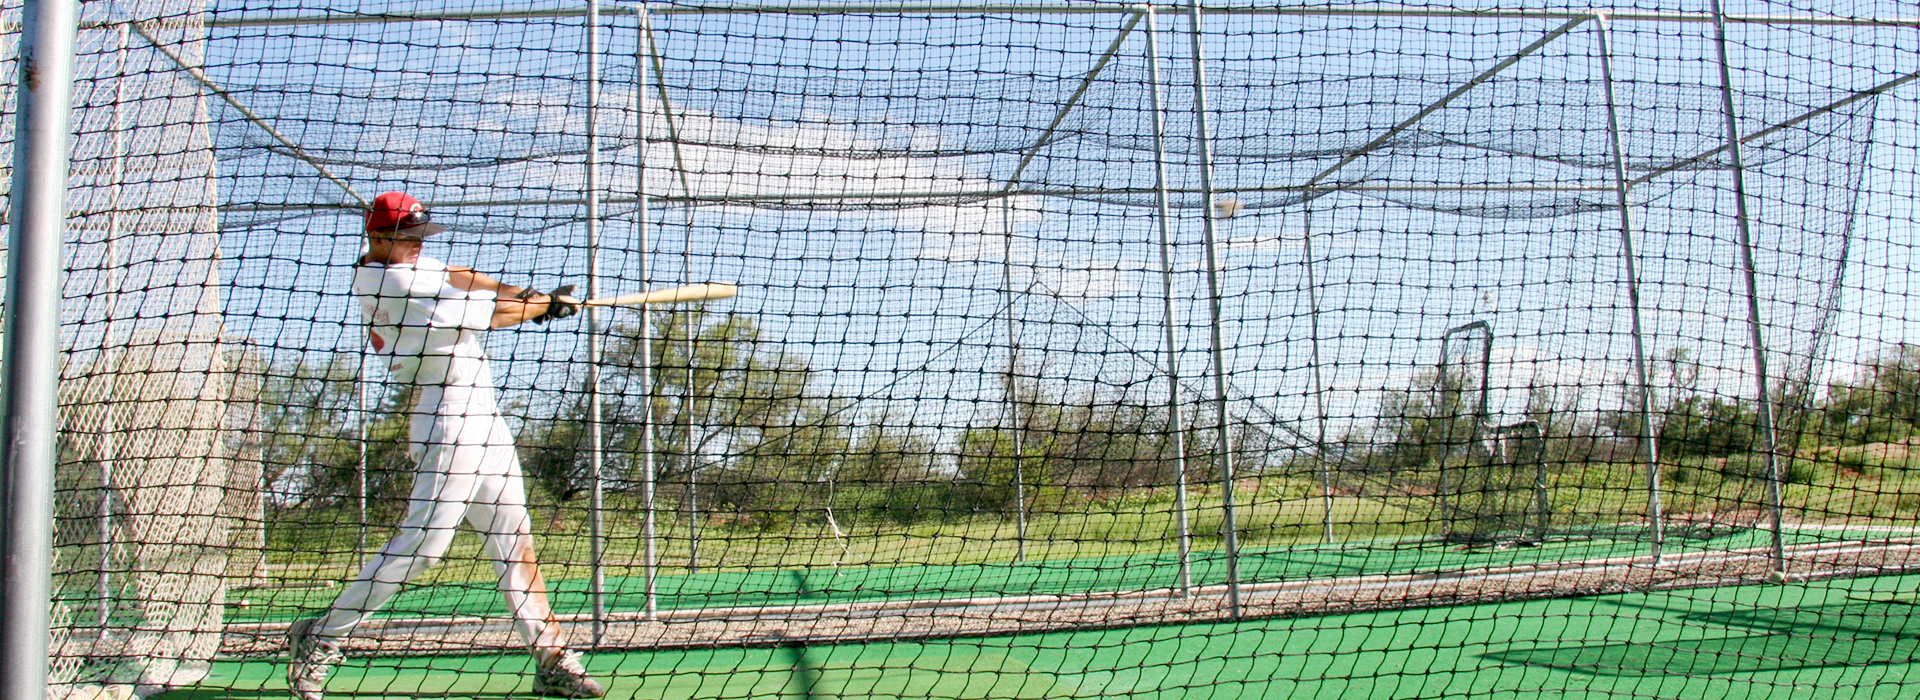 Baseball Cage Frame